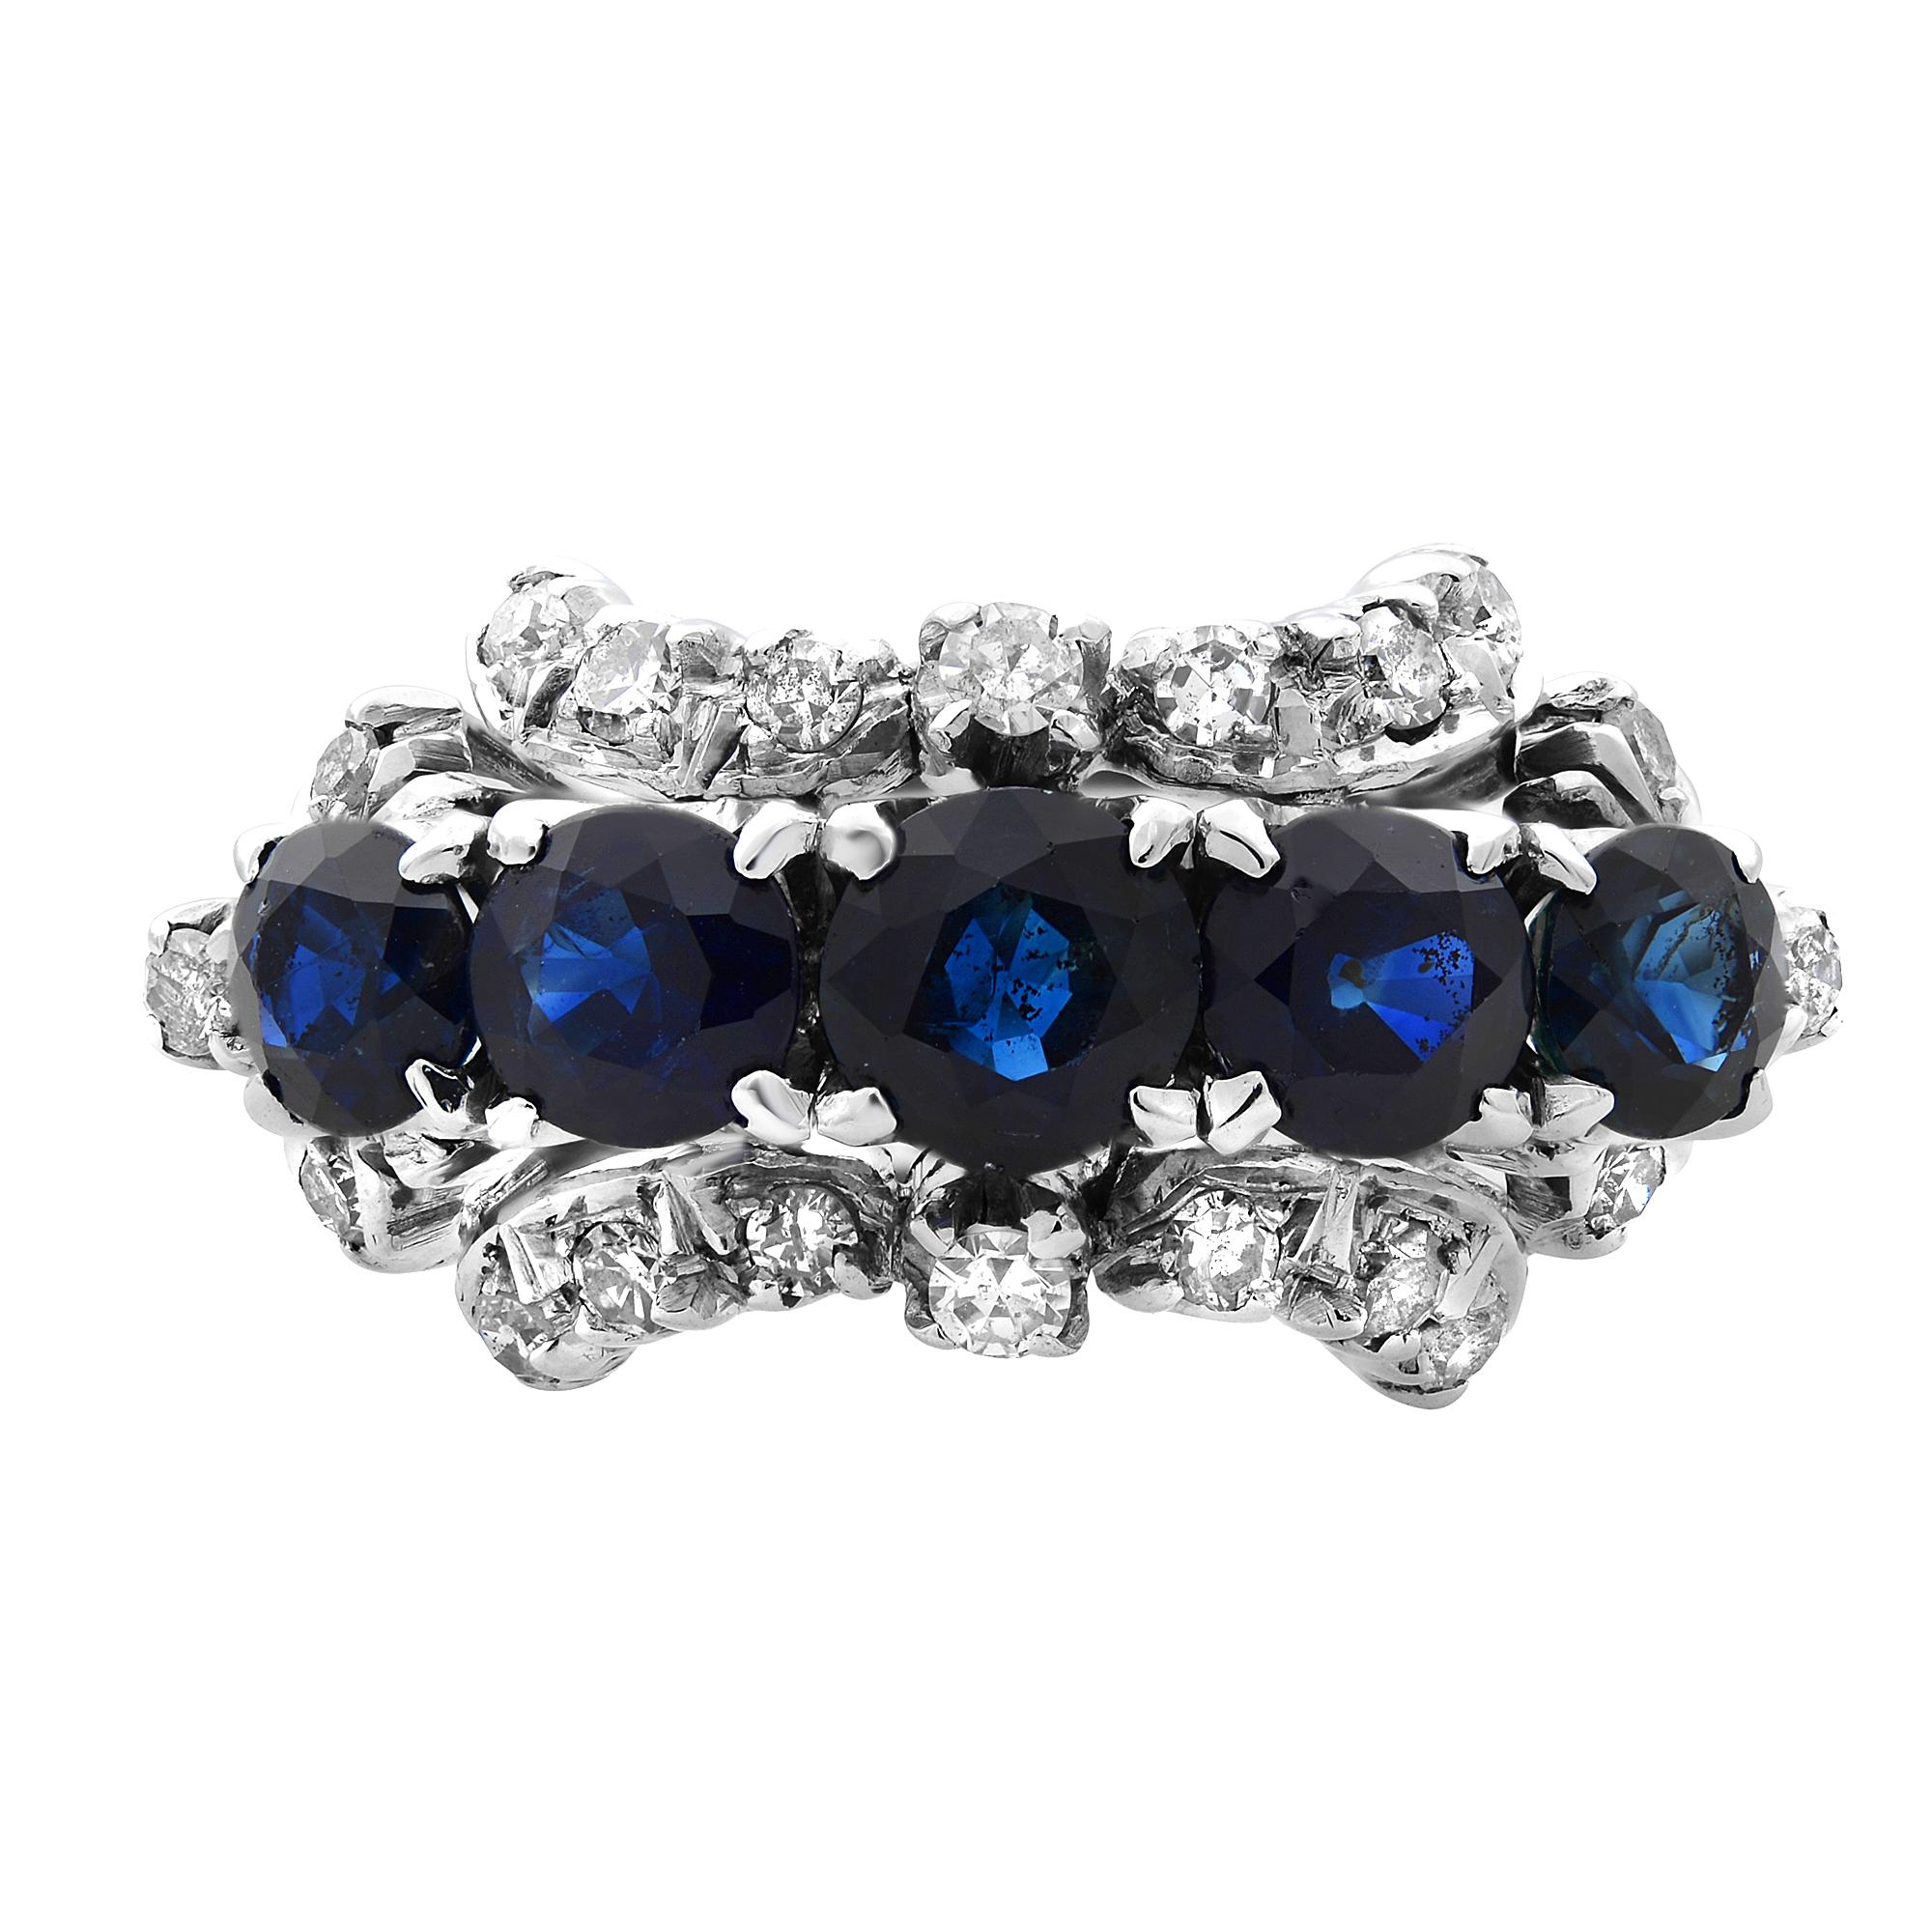  Diese schöne Damen blauen Saphir und Diamant-Cocktail Estate Ring. Verfügt über 1,0cttw Saphire und 0,35cttw Diamanten, alle mit Zacken auf 18K Weißgold Band gesetzt. Ringgröße 9,25 (kann angepasst werden). Wird in einer hübschen Geschenkbox